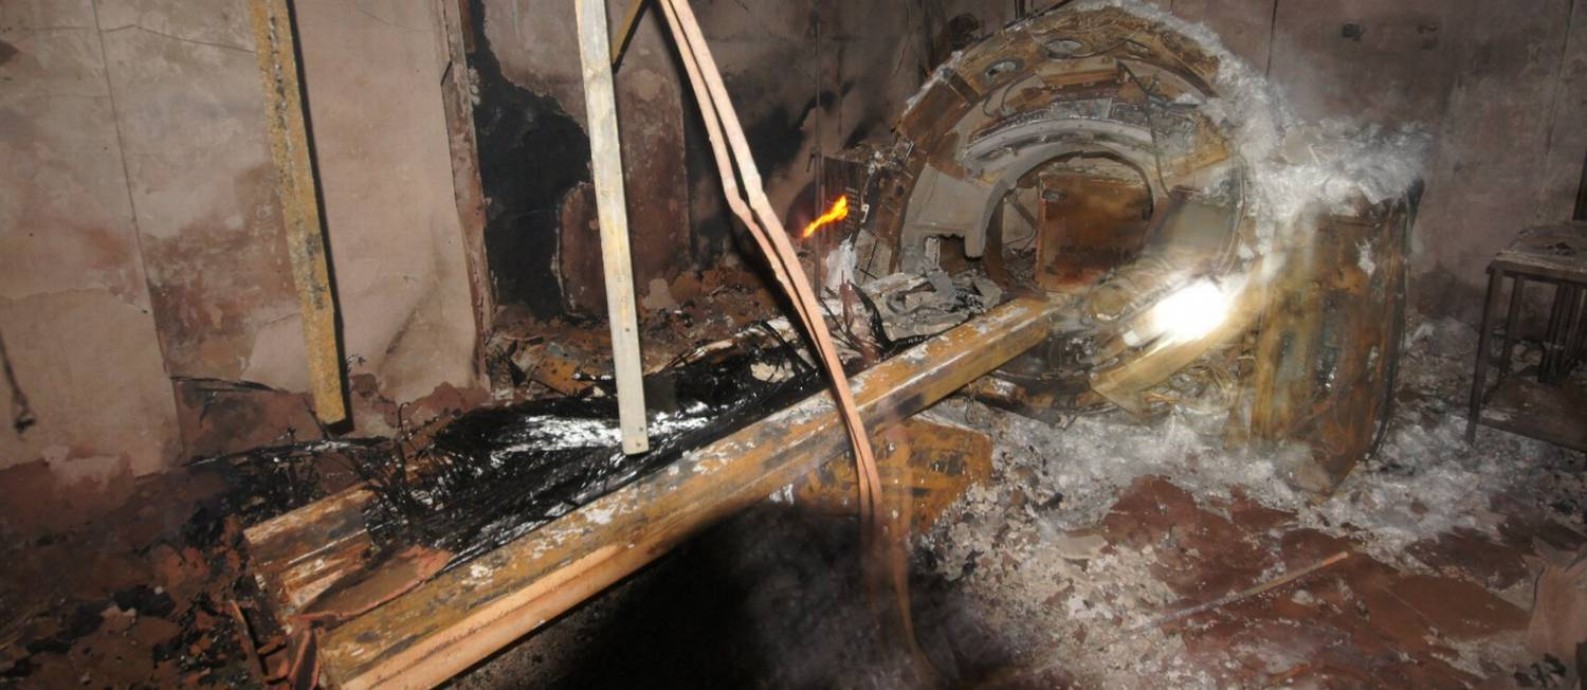 Do tomógrafo do Hospital Badim, restou apenas a estrutura de ferro após o incêndio Foto: Imagem cedida pela TV Globo